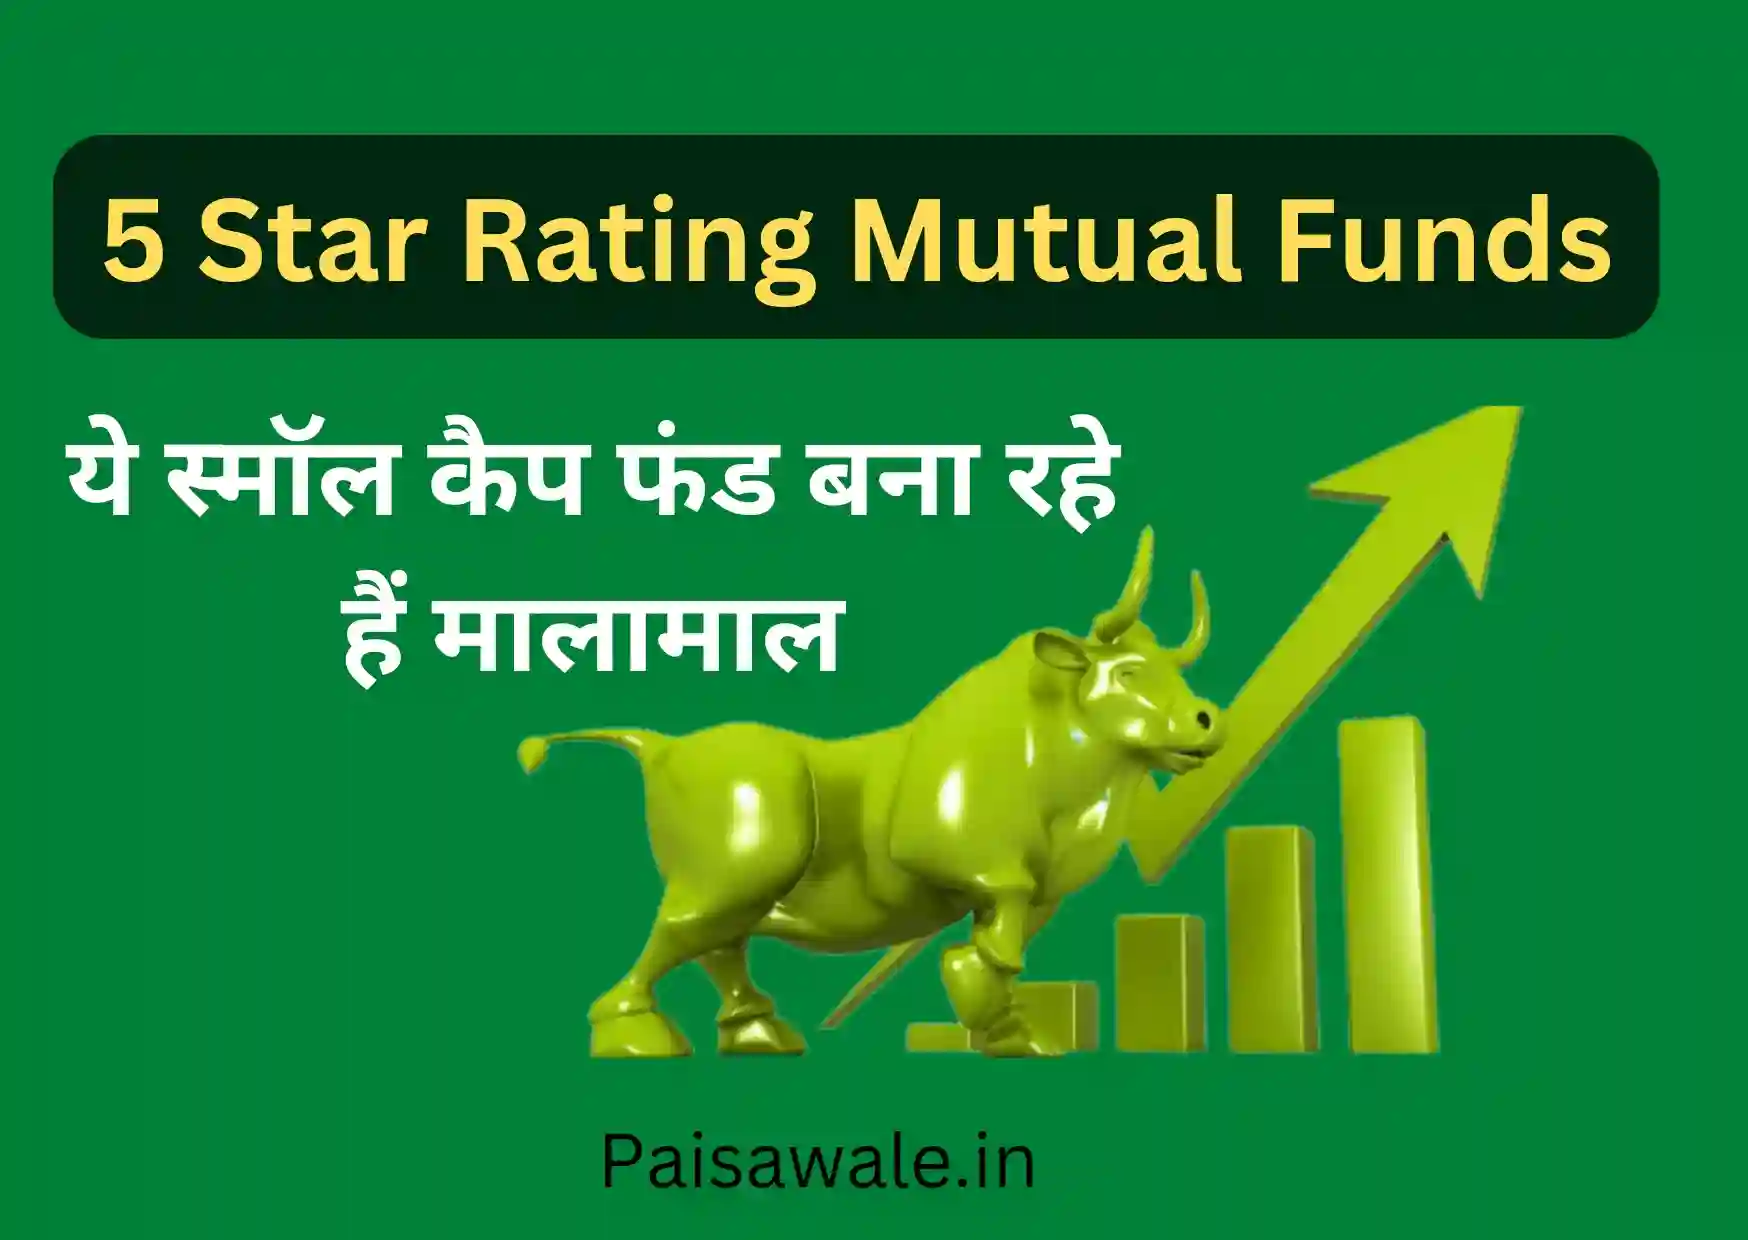 5 star rating wale small cap mutual funds, टाॅप 10 स्माॅल कैप म्यूचुअल फंड